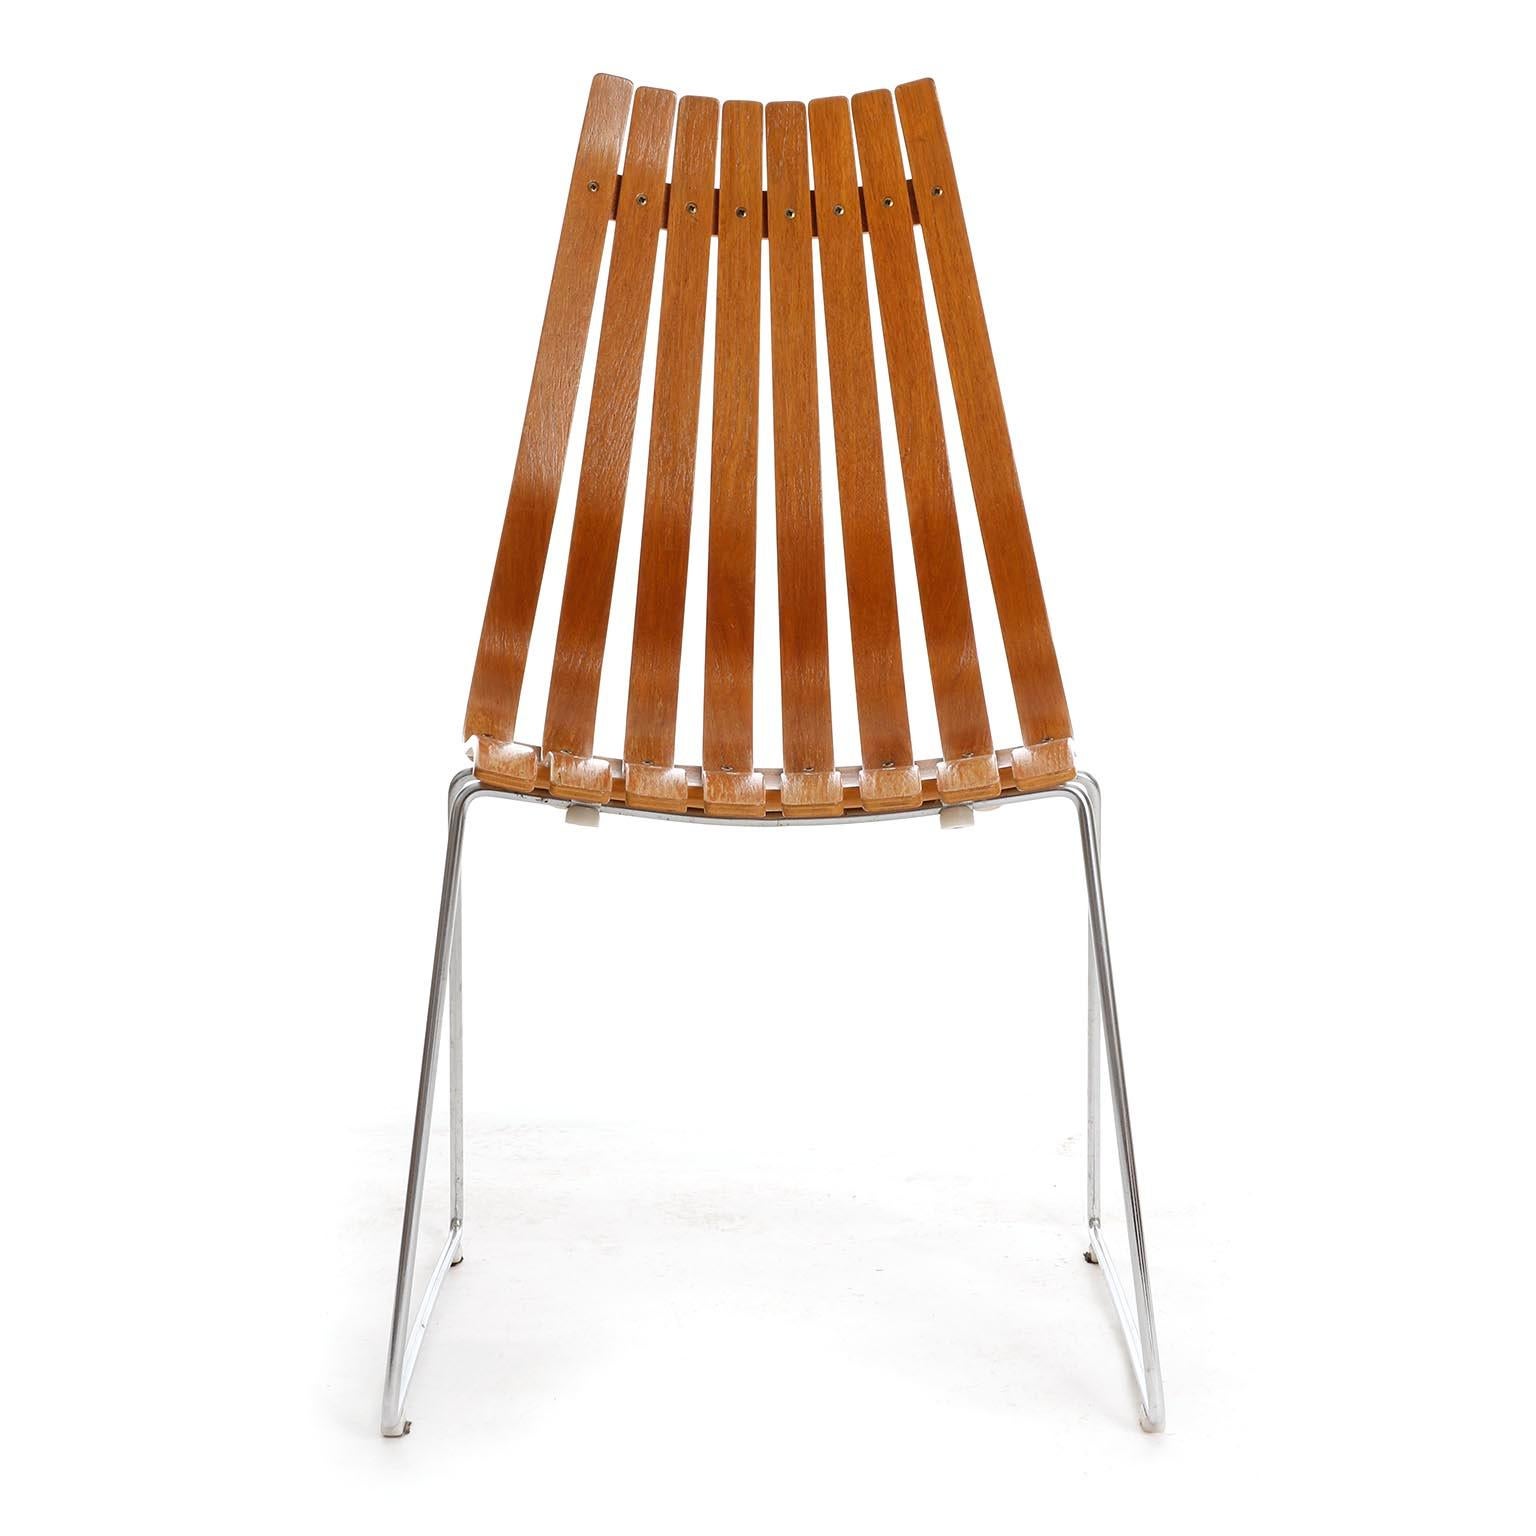 Une chaise de la série Scandia, conçue par le designer norvégien Hans Brattrud en 1957 et produite par Hove Mobler au milieu du siècle, vers 1960.
La chaise est composée d'une base en acier chromé et le siège est constitué de lattes courbes et